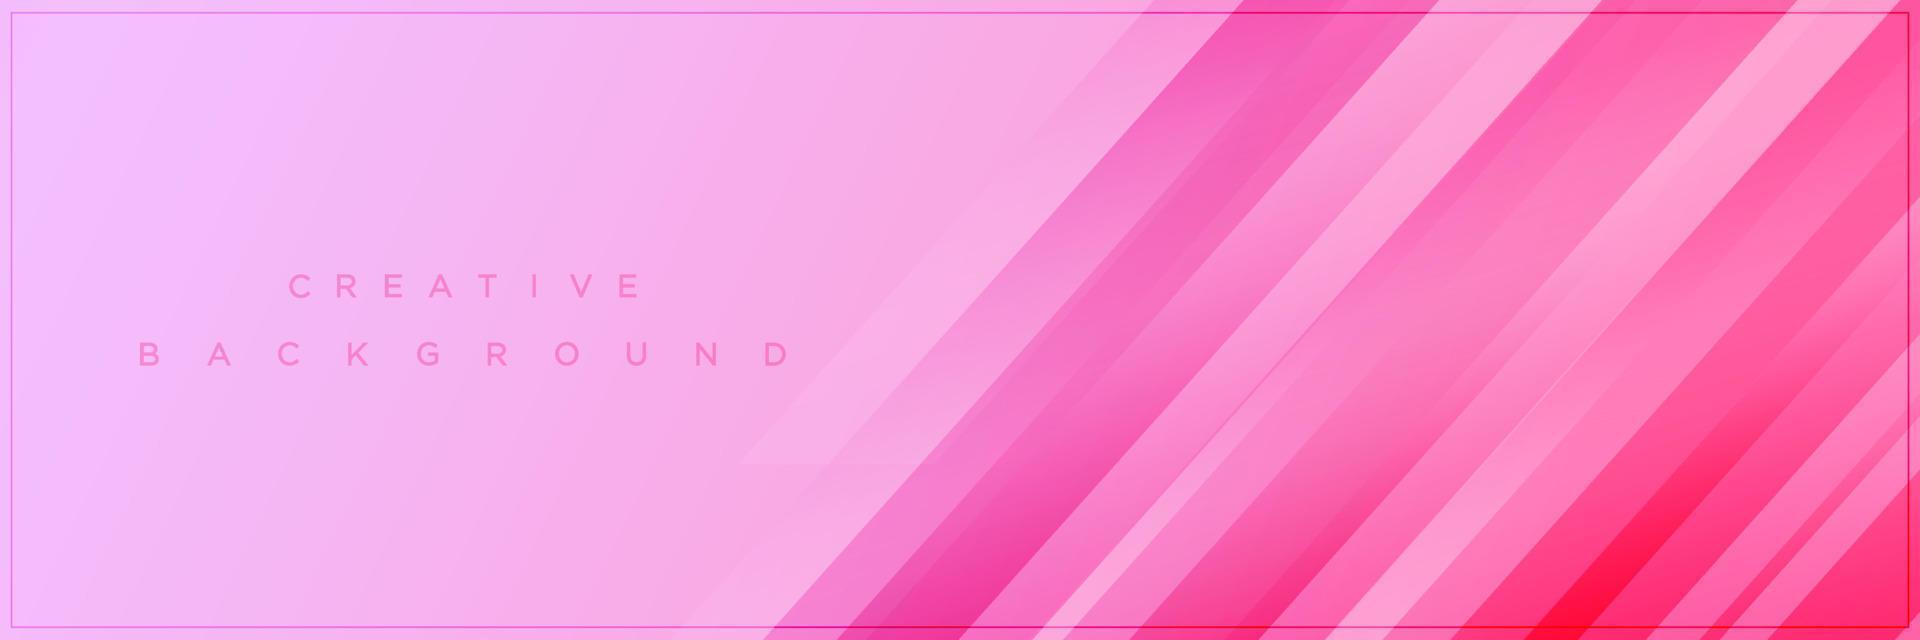 schoonheid abstract zacht roze gradiëntbanner achtergrondontwerp vector